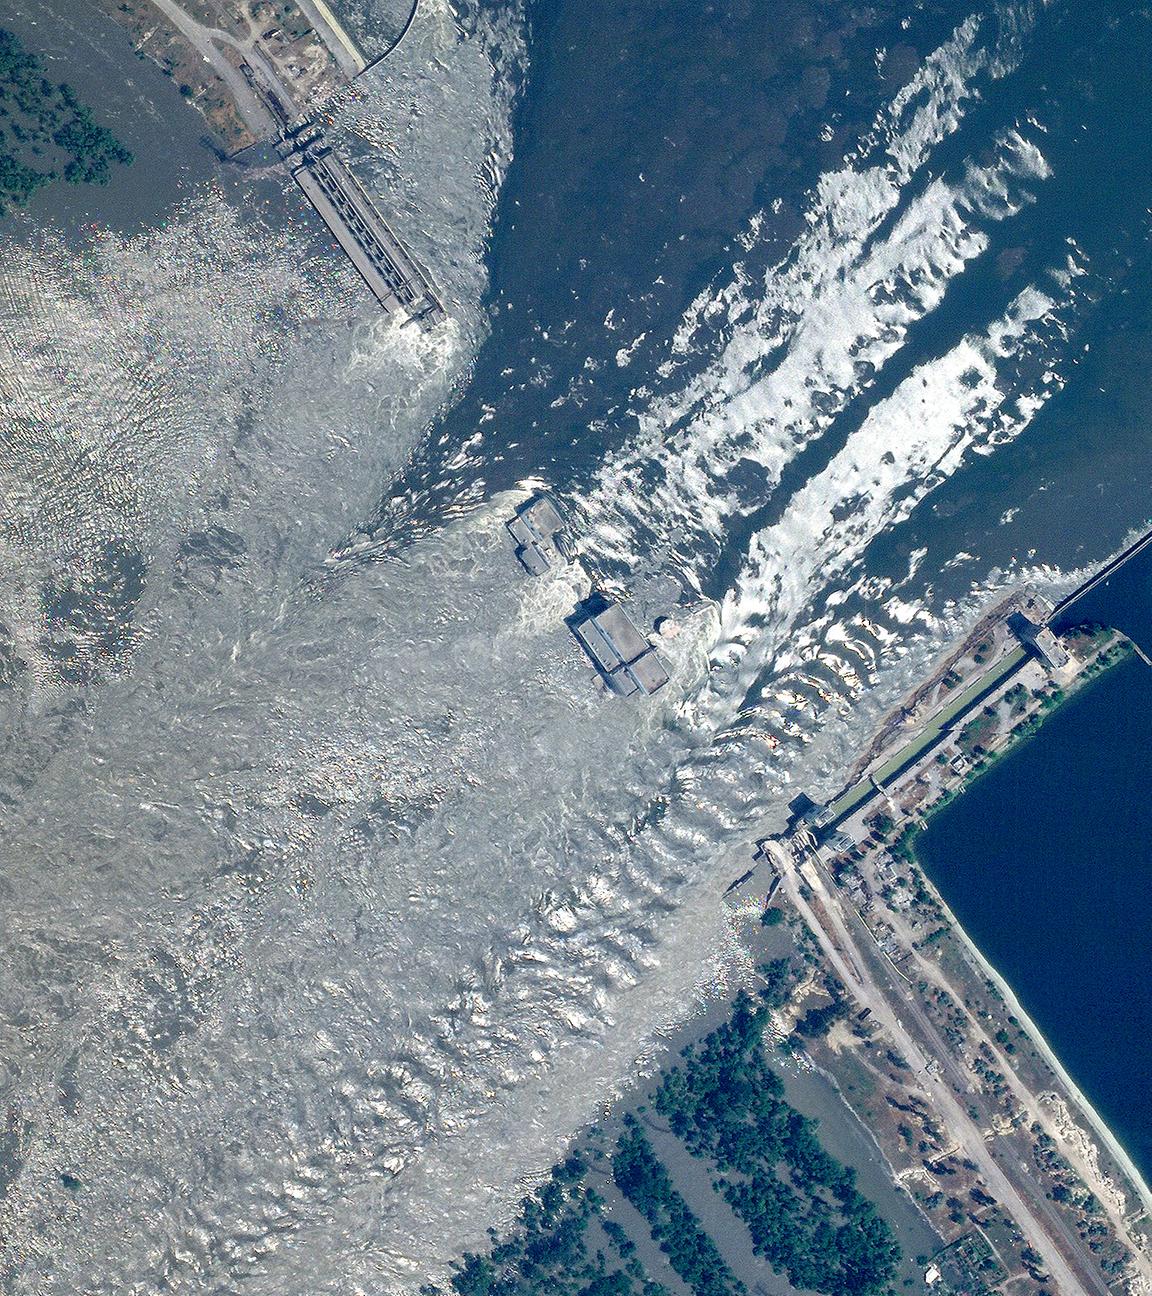 Luftbild von zerstörtem Kachowka-Staudamm bei Cherson, Ukraine